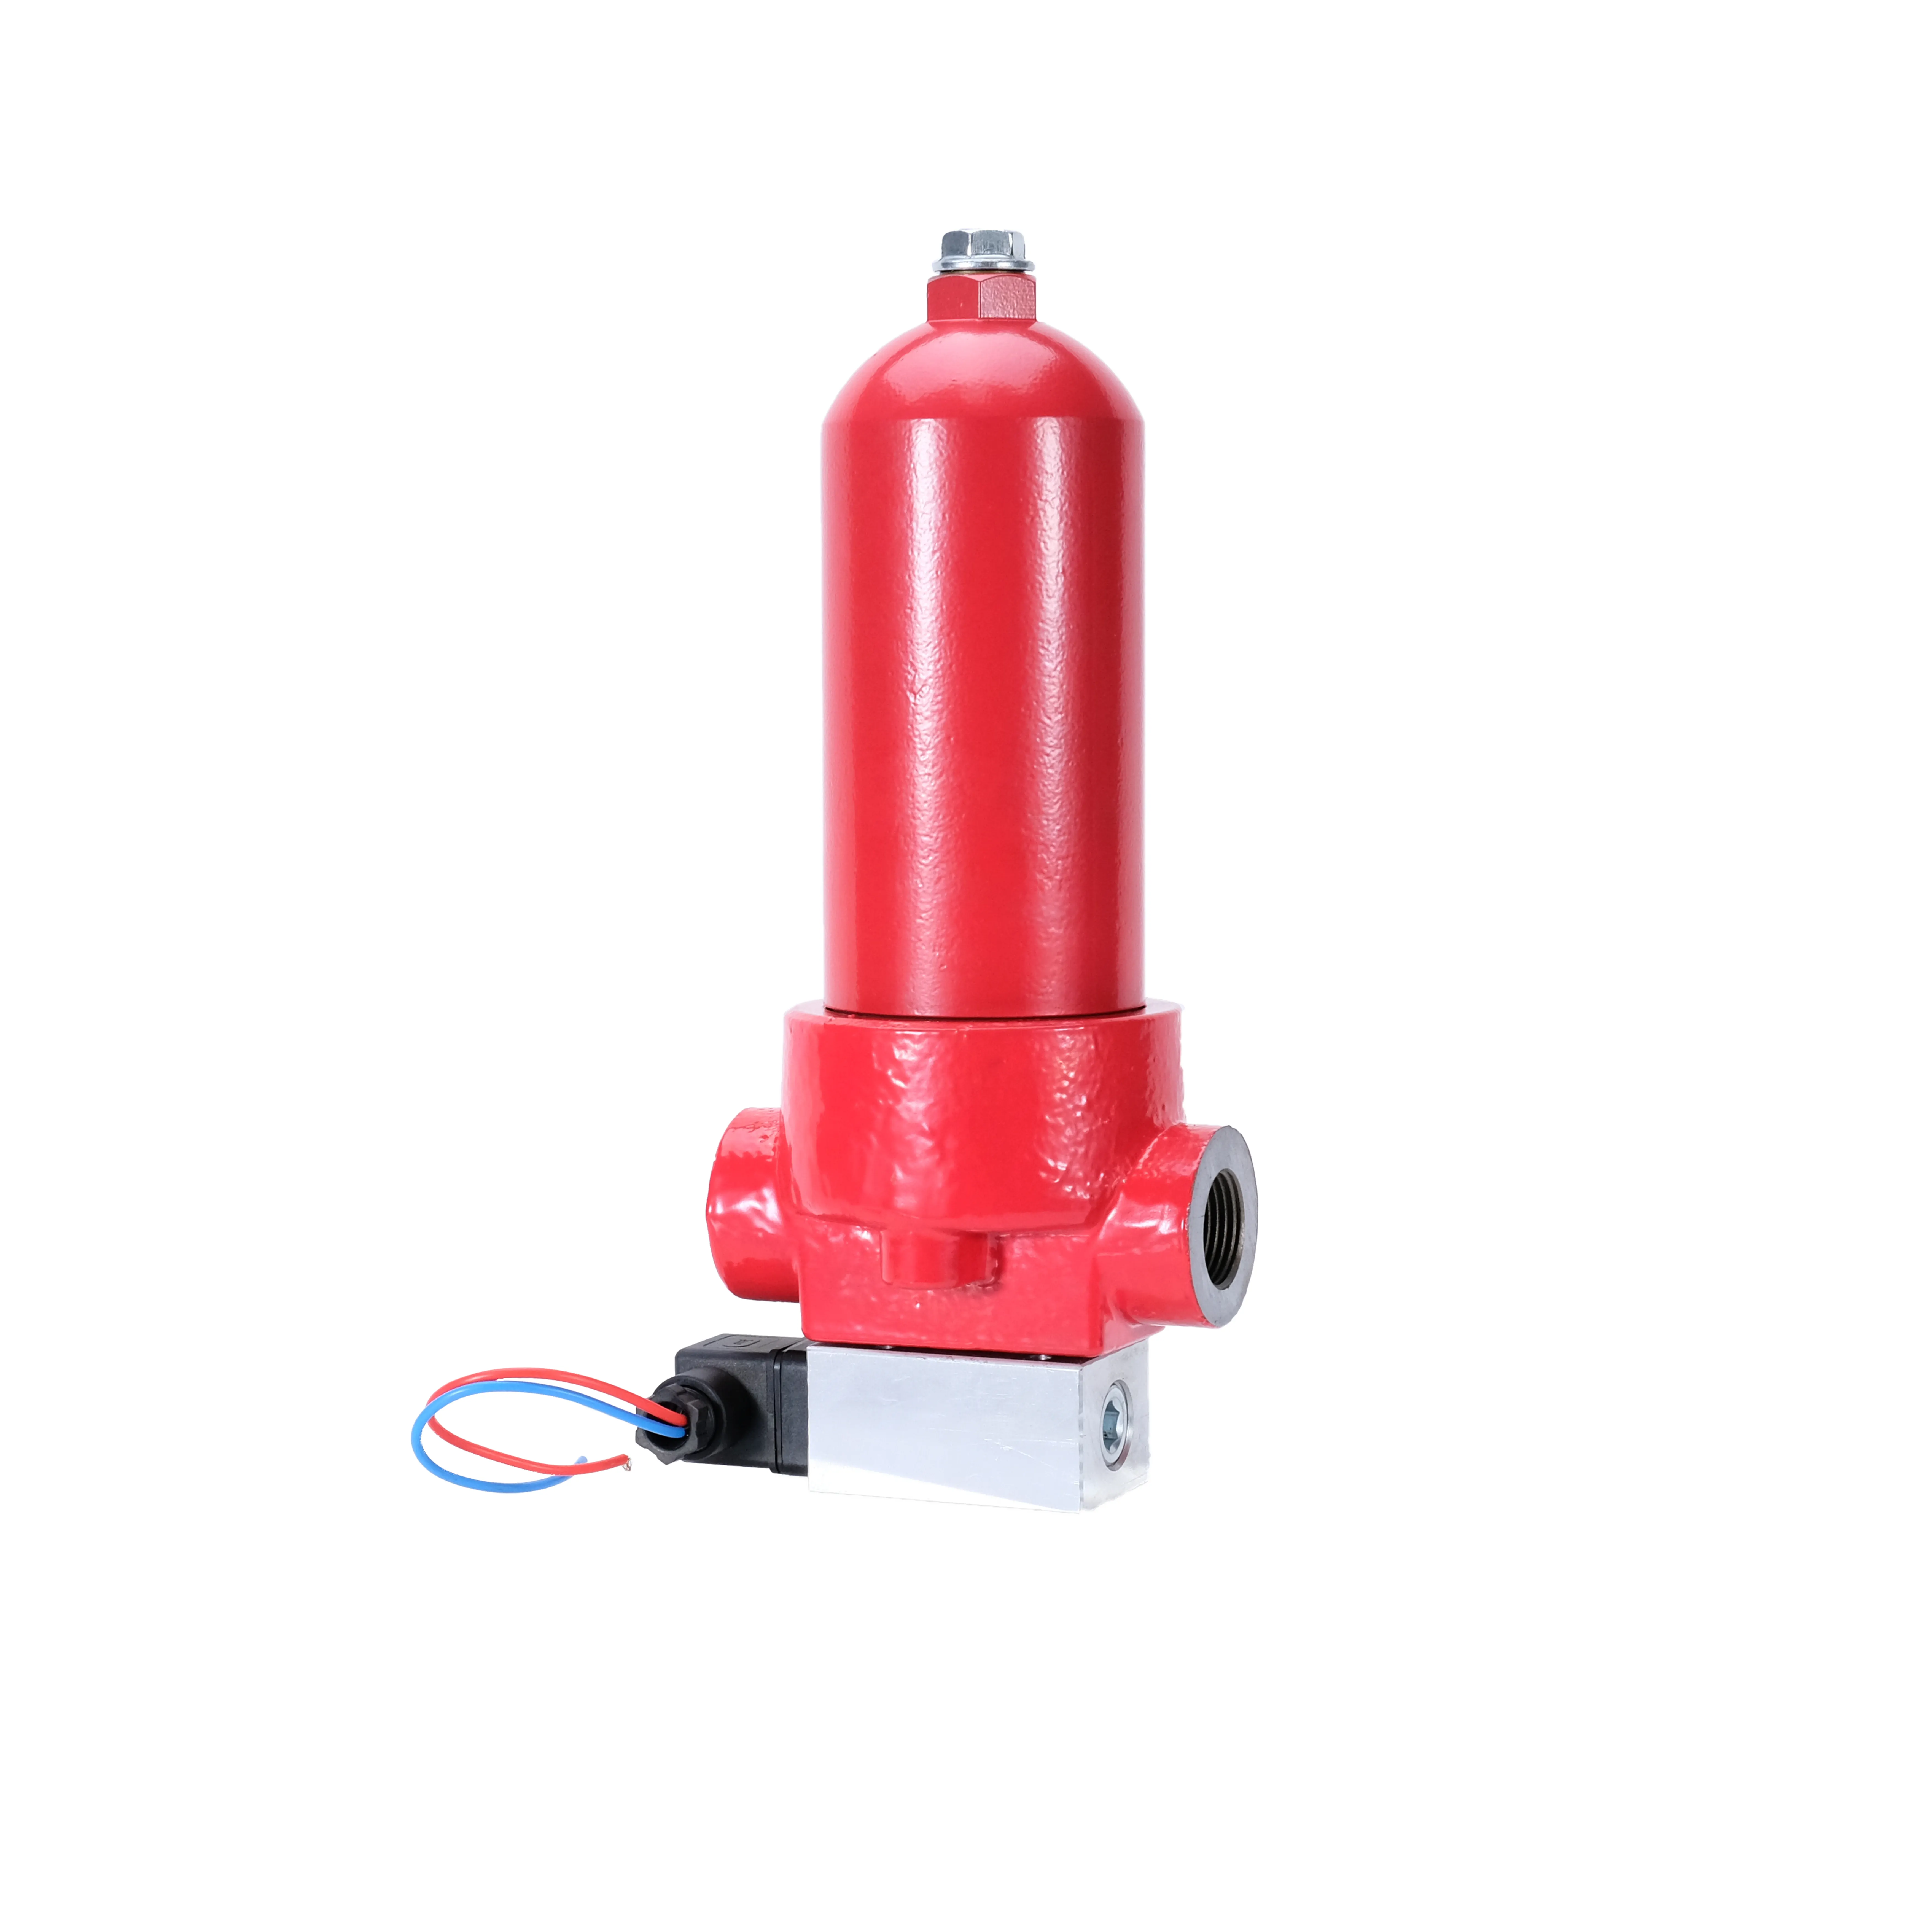 ZU-H25X20LP, Hochdruck hydrauliköl filter für Bagger unterbrecher und hydraulische Rohrleitung